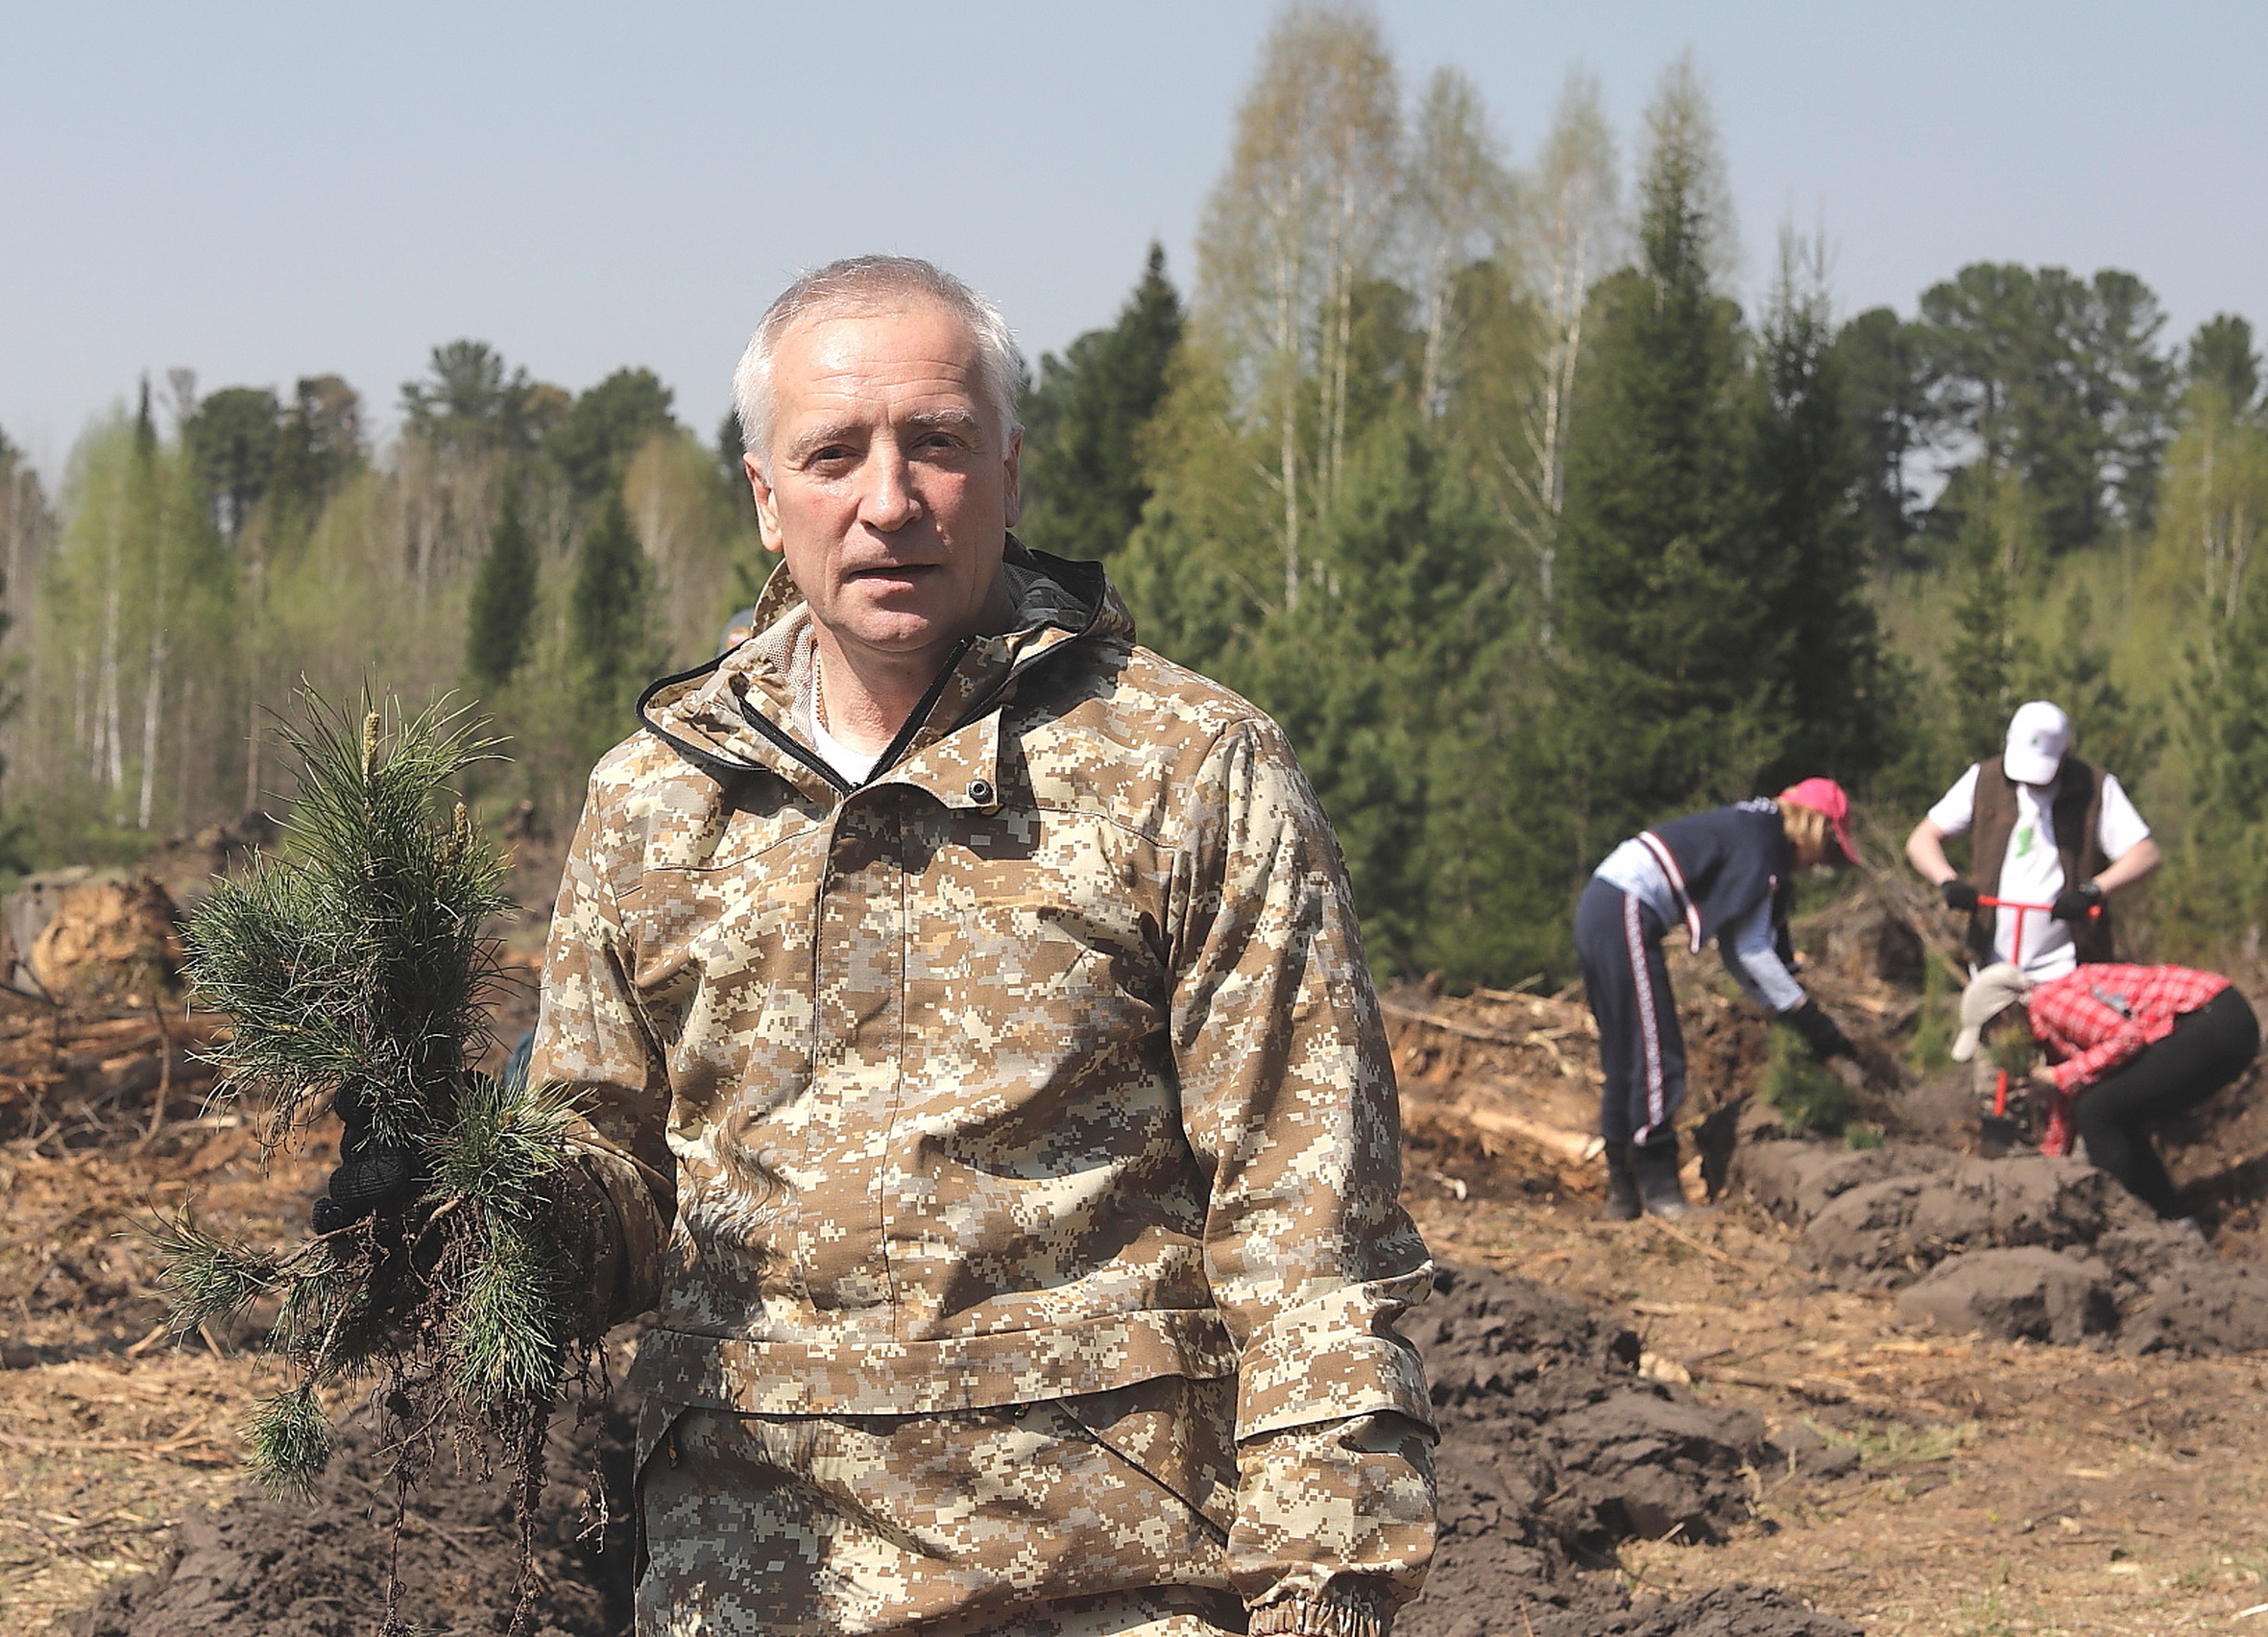 Врио губернатора Томской области дал старт акции «Сад памяти», посадив кедры